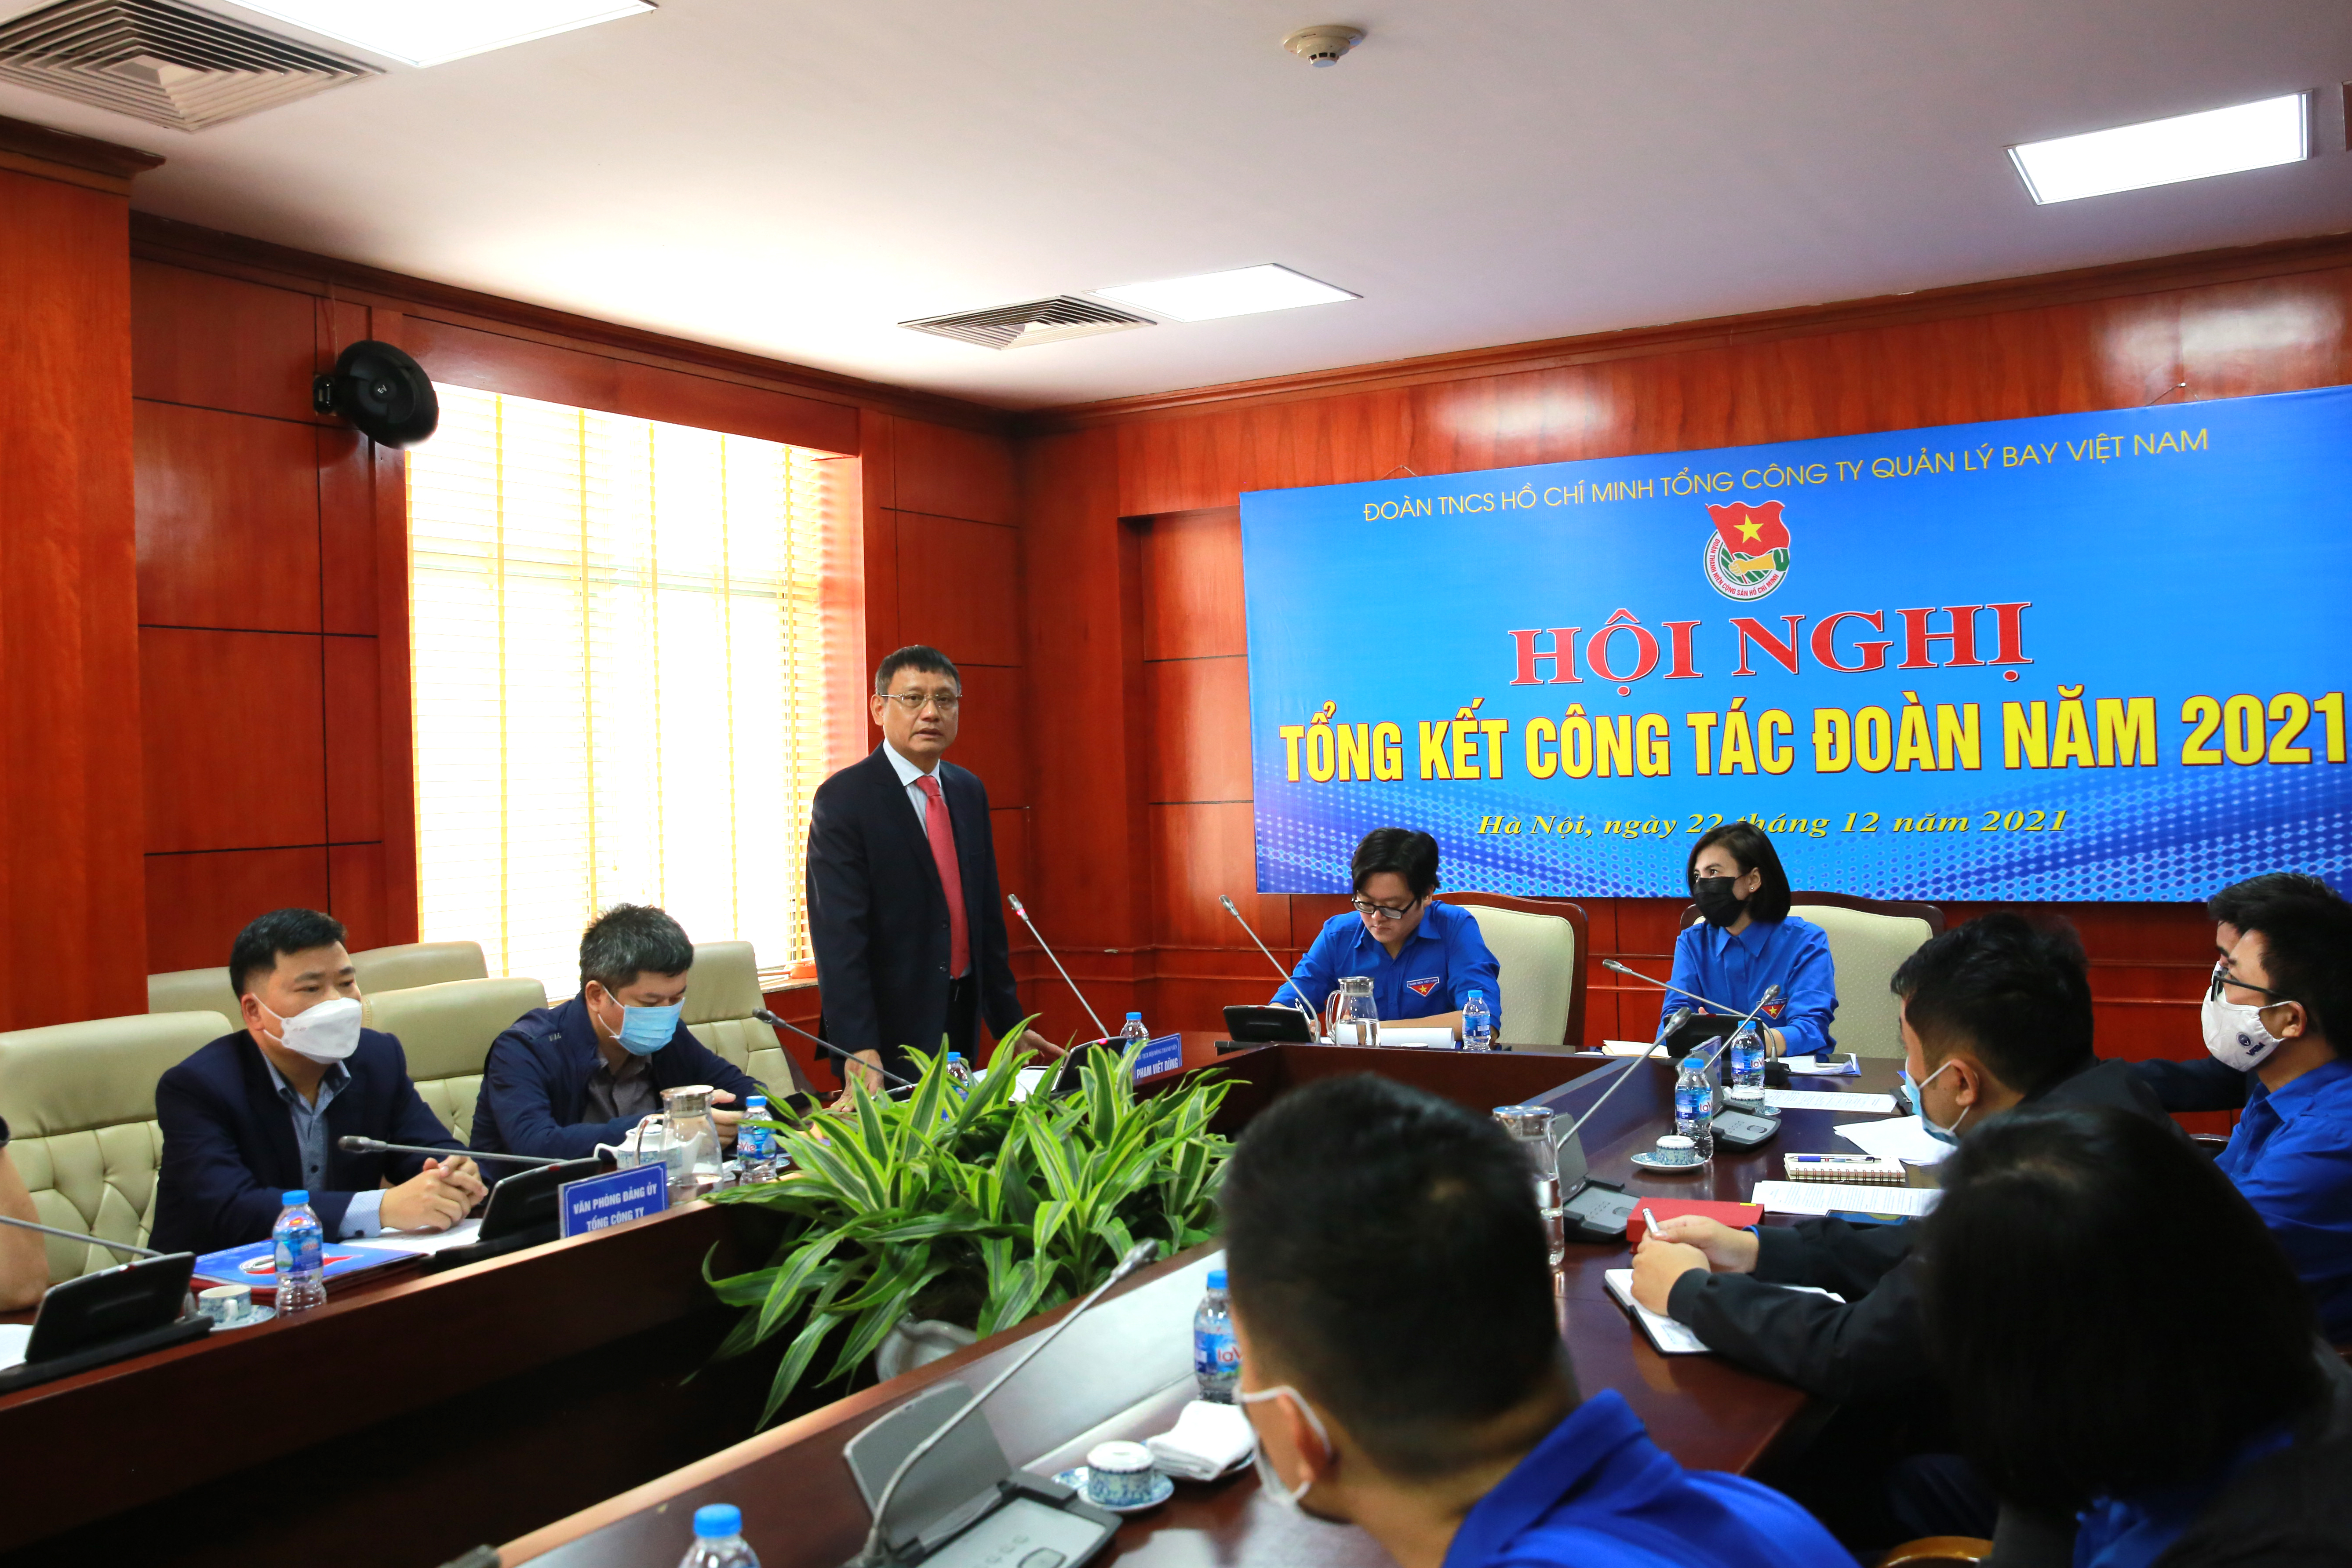 Đoàn thanh niên Tổng công ty Quản lý bay Việt Nam tổ chức Hội nghị Tổng kết Công tác Đoàn năm 2021